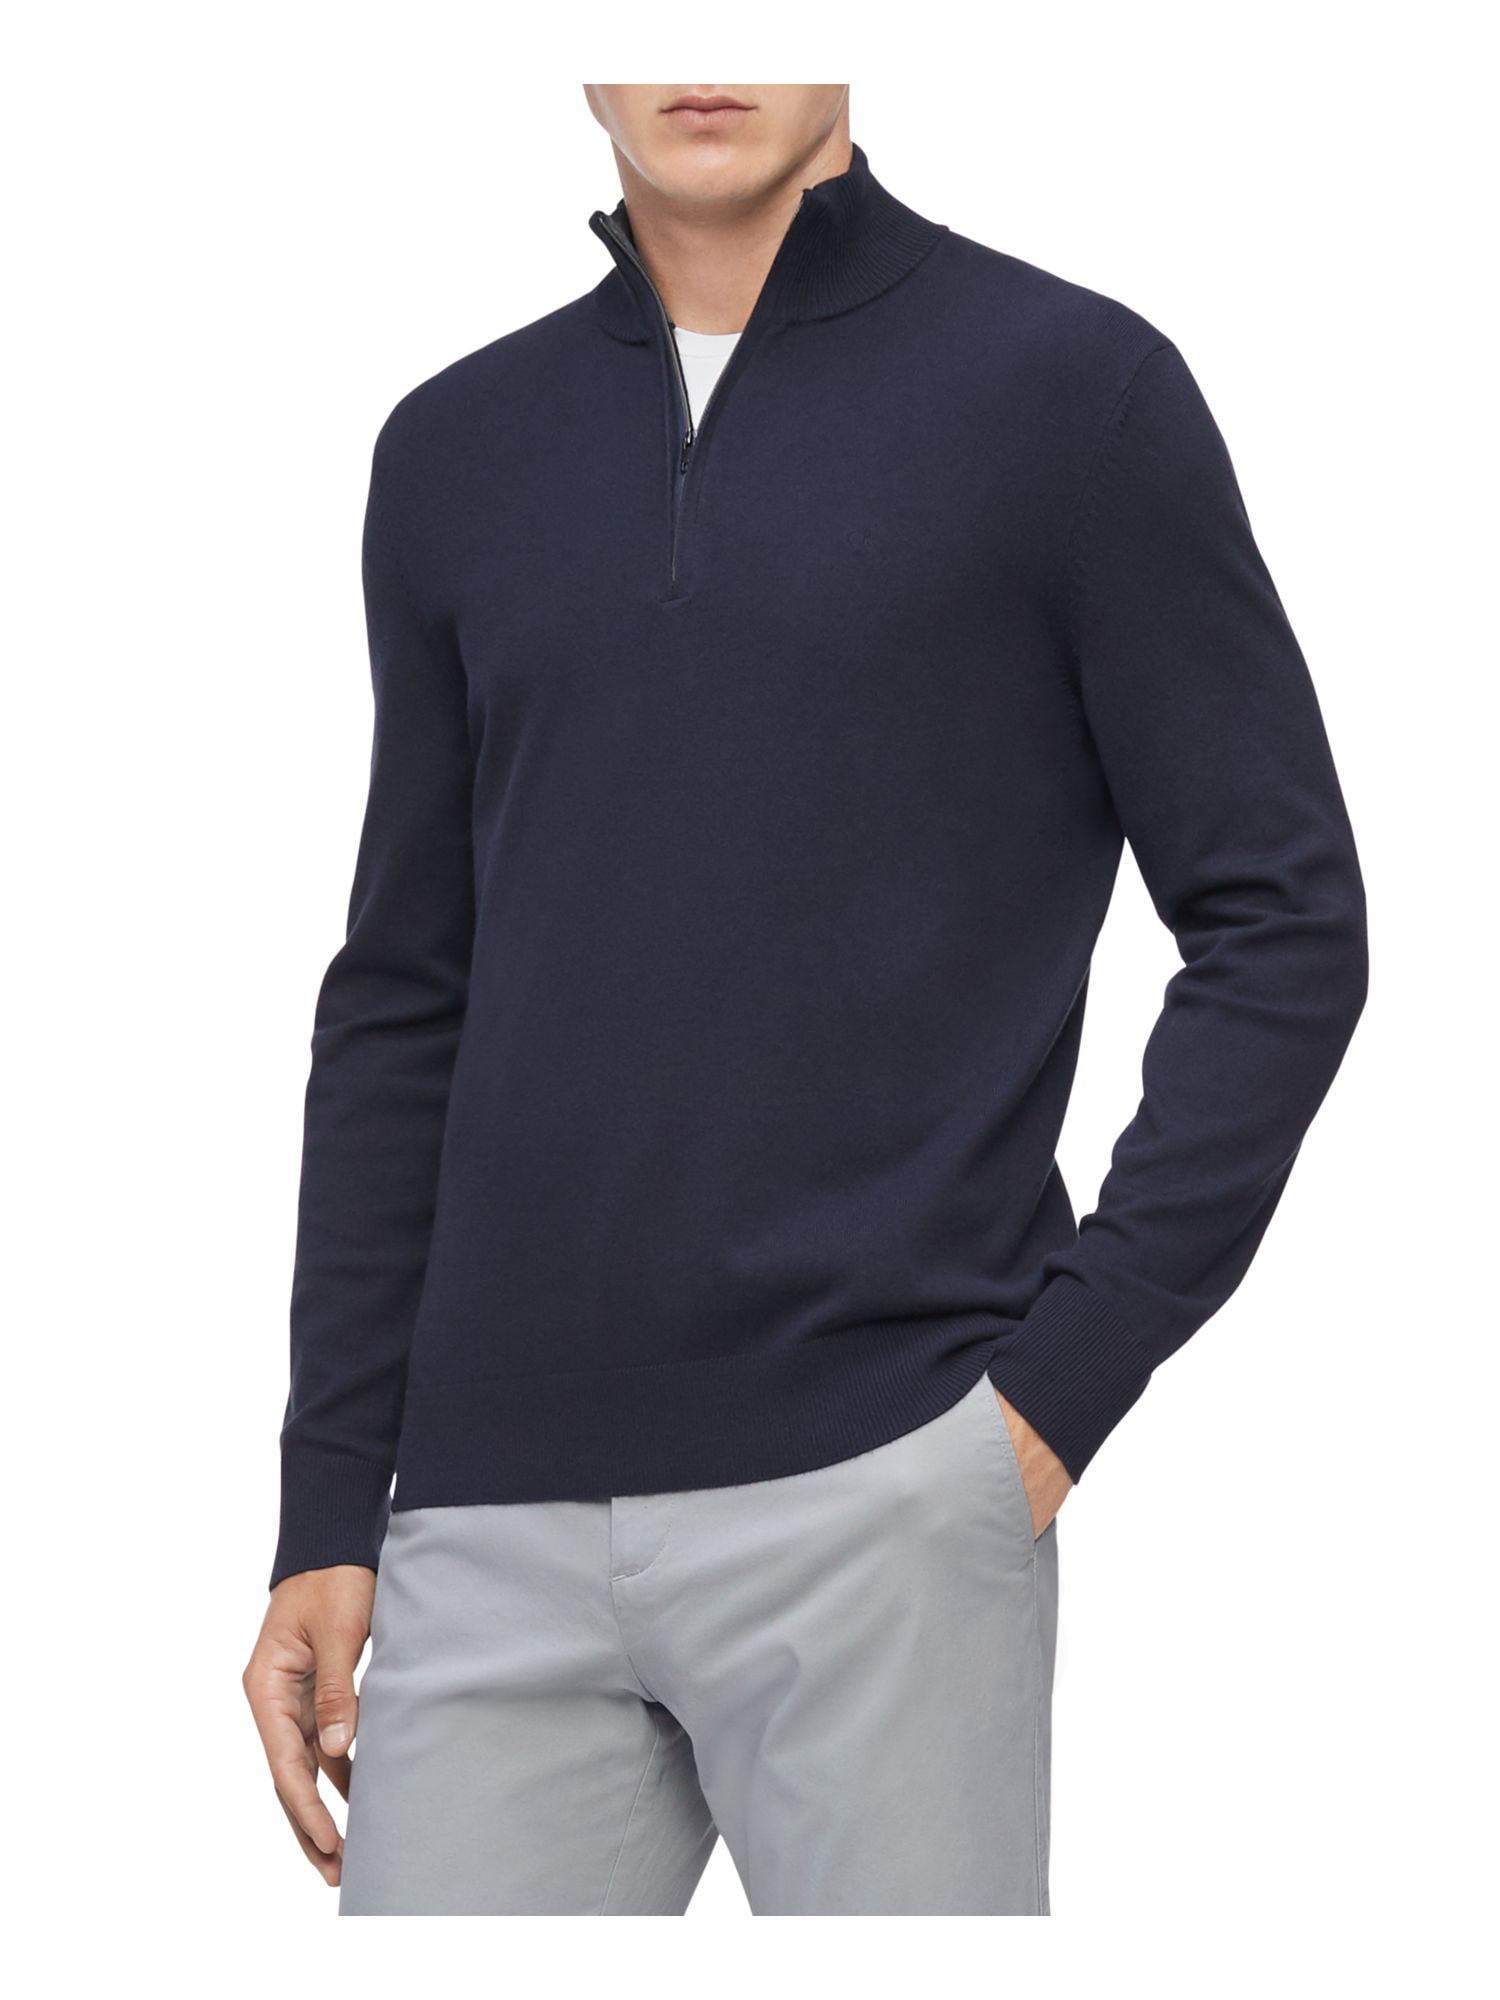 CALVIN KLEIN Mens Long Sweater Lightweight Collared Quarter-Zip Pullover L Blue Sleeve